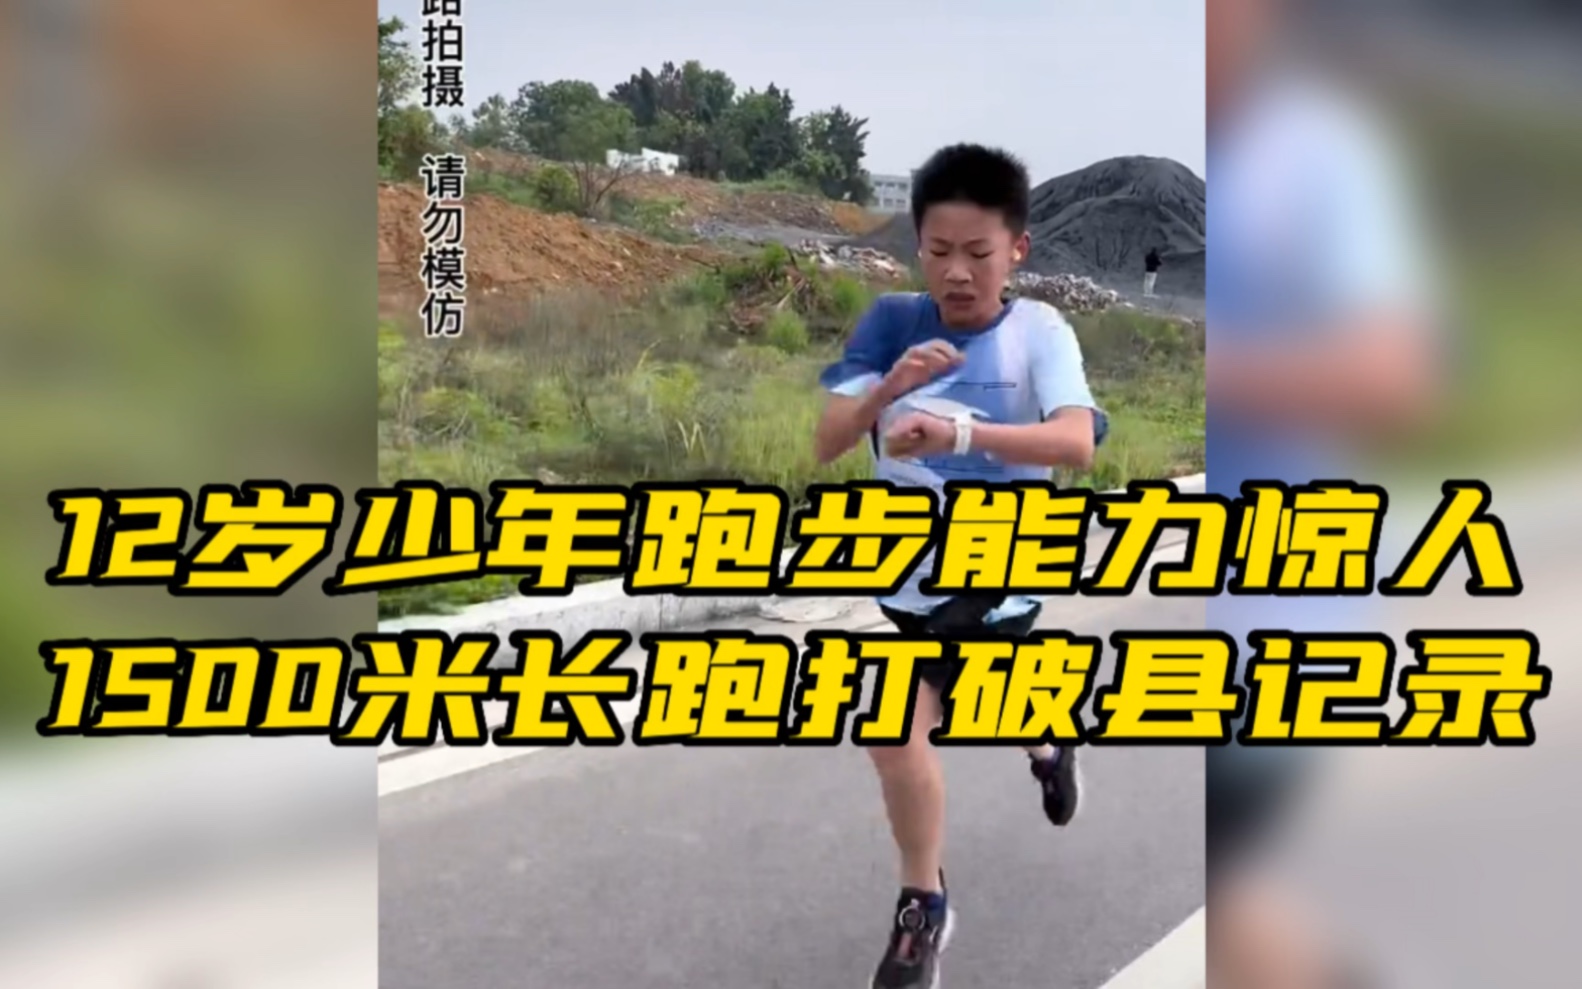 12岁少年跑步能力惊人，1500米长跑打破县记录